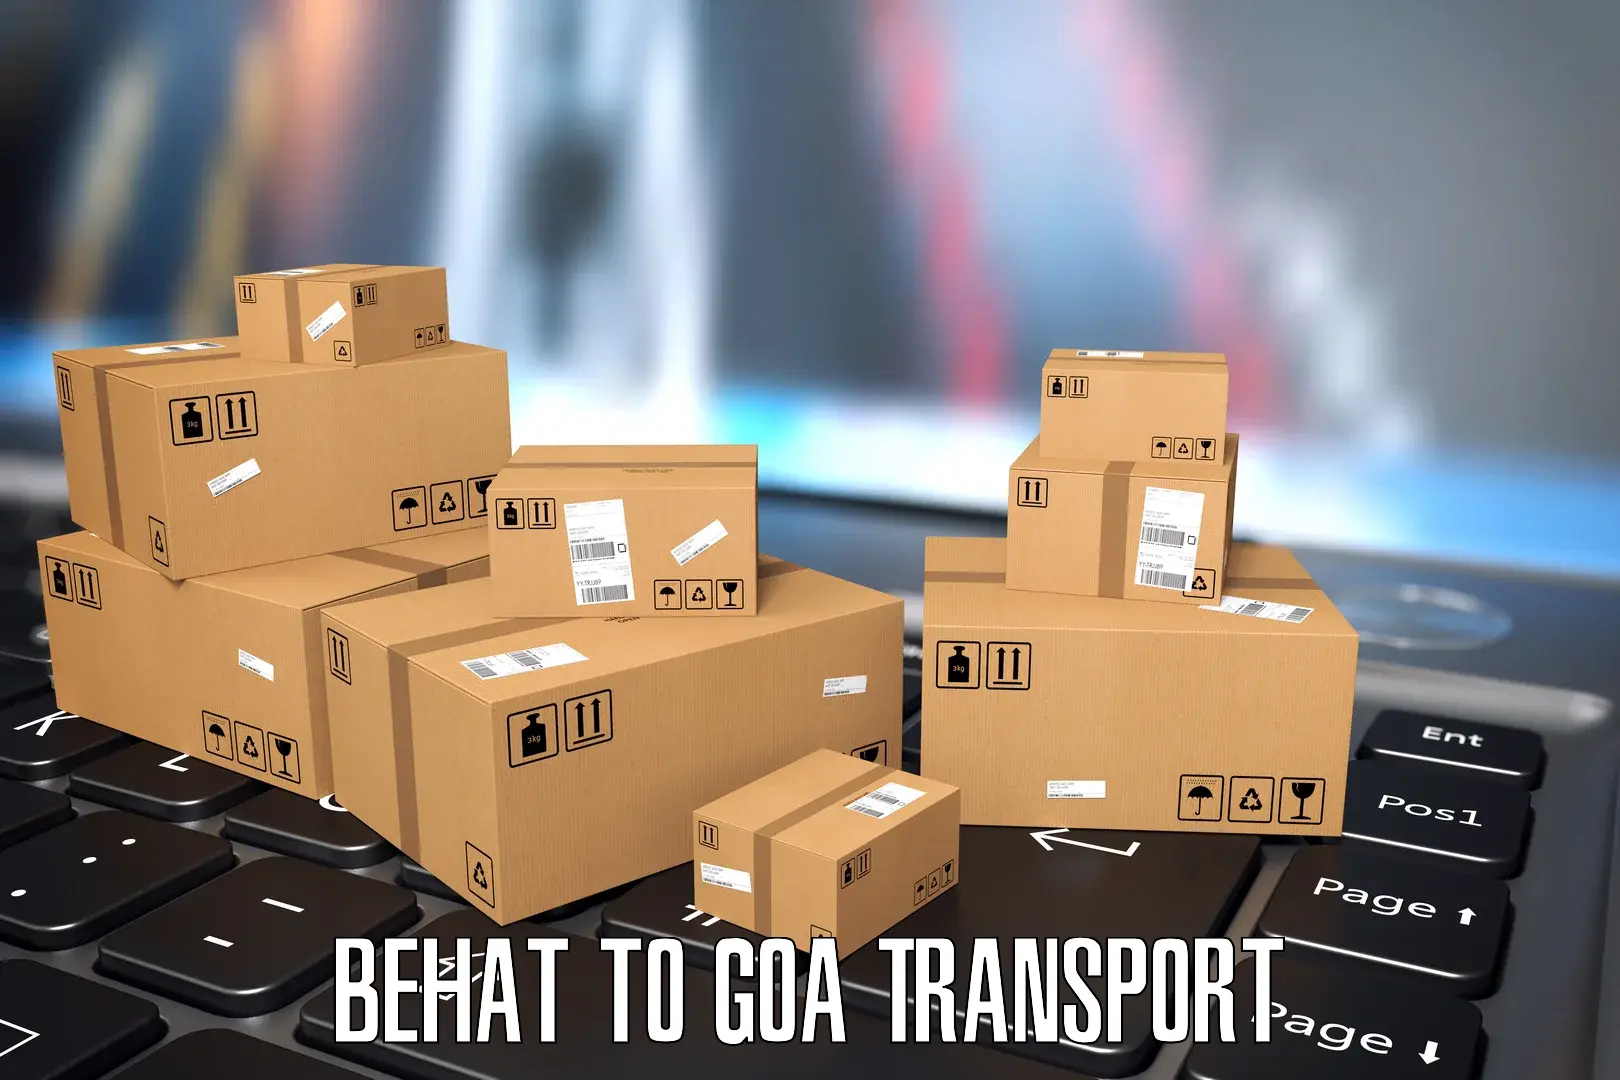 Online transport booking Behat to IIT Goa